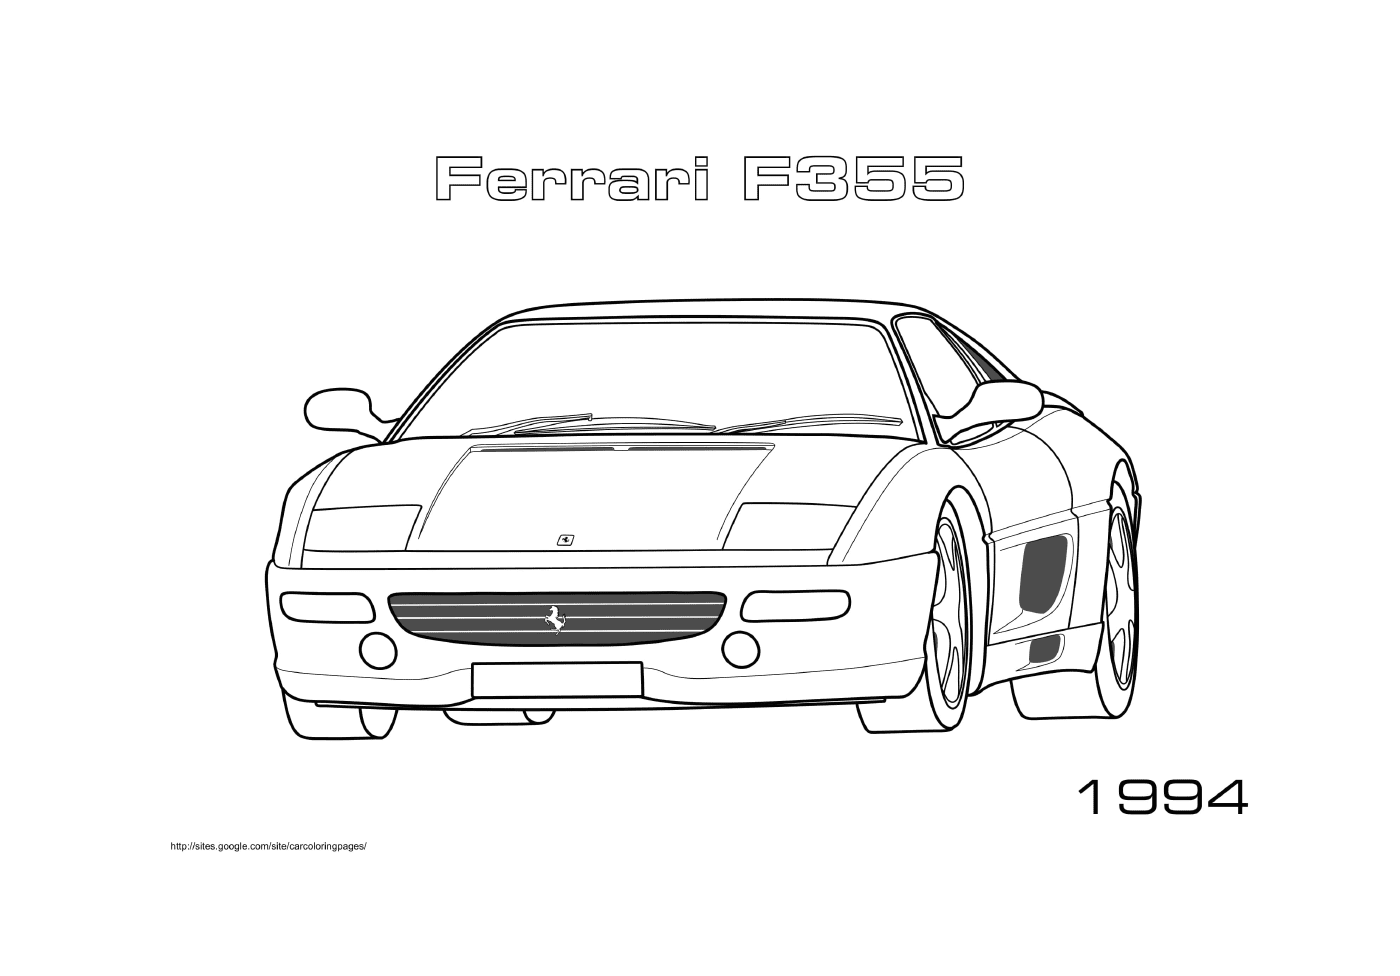  Ferrari F355 de 1994 